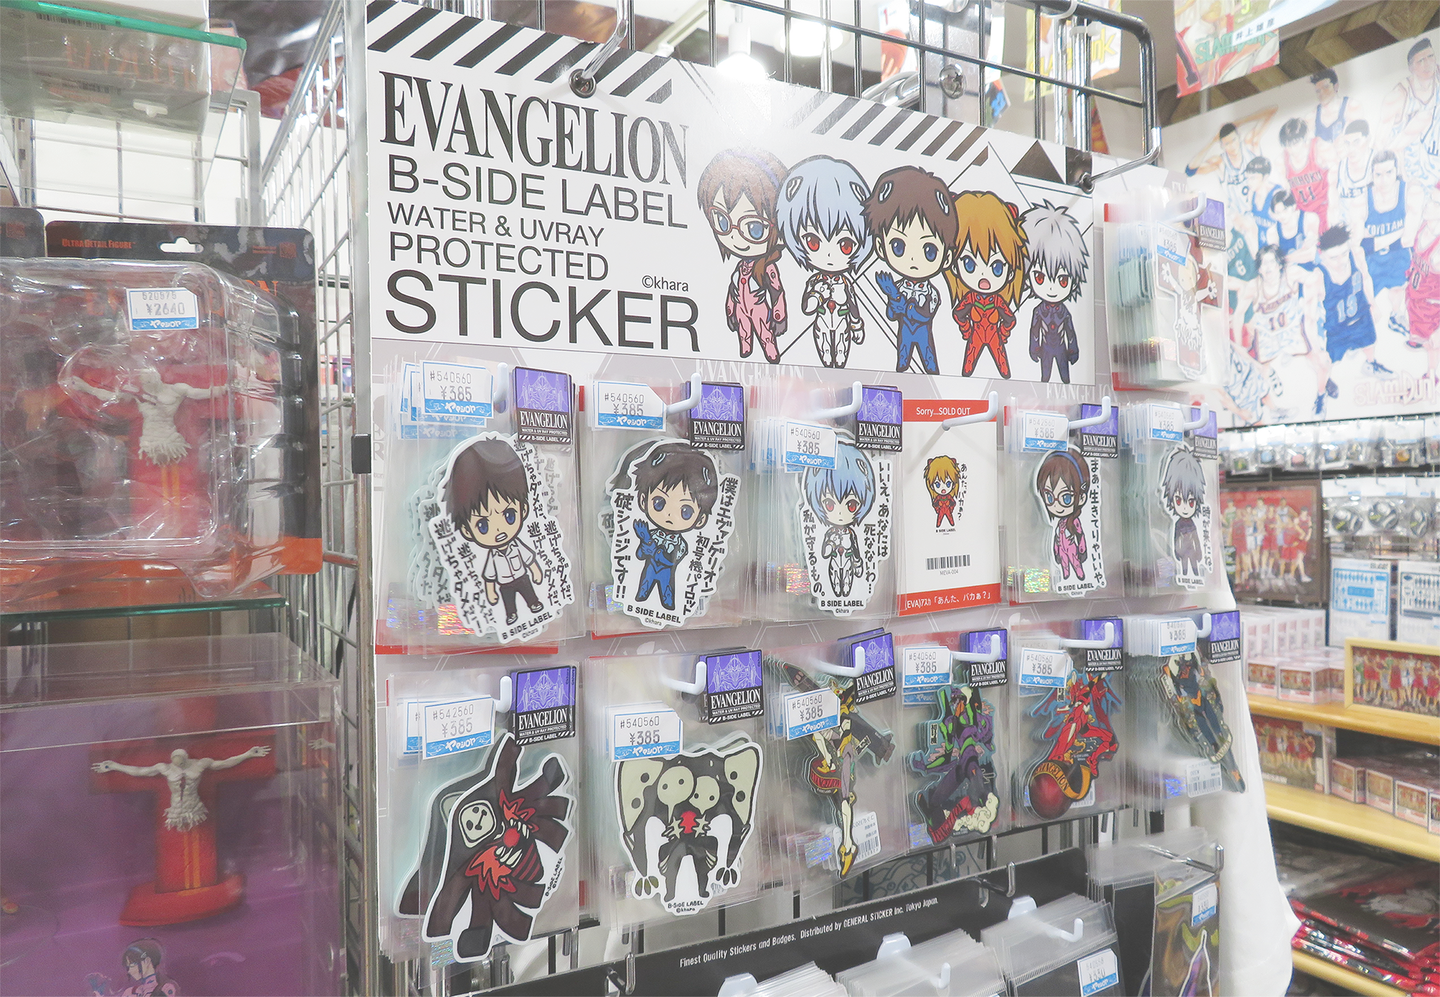 Images of Evangelion merchandise sold at YAMASHIROYA1